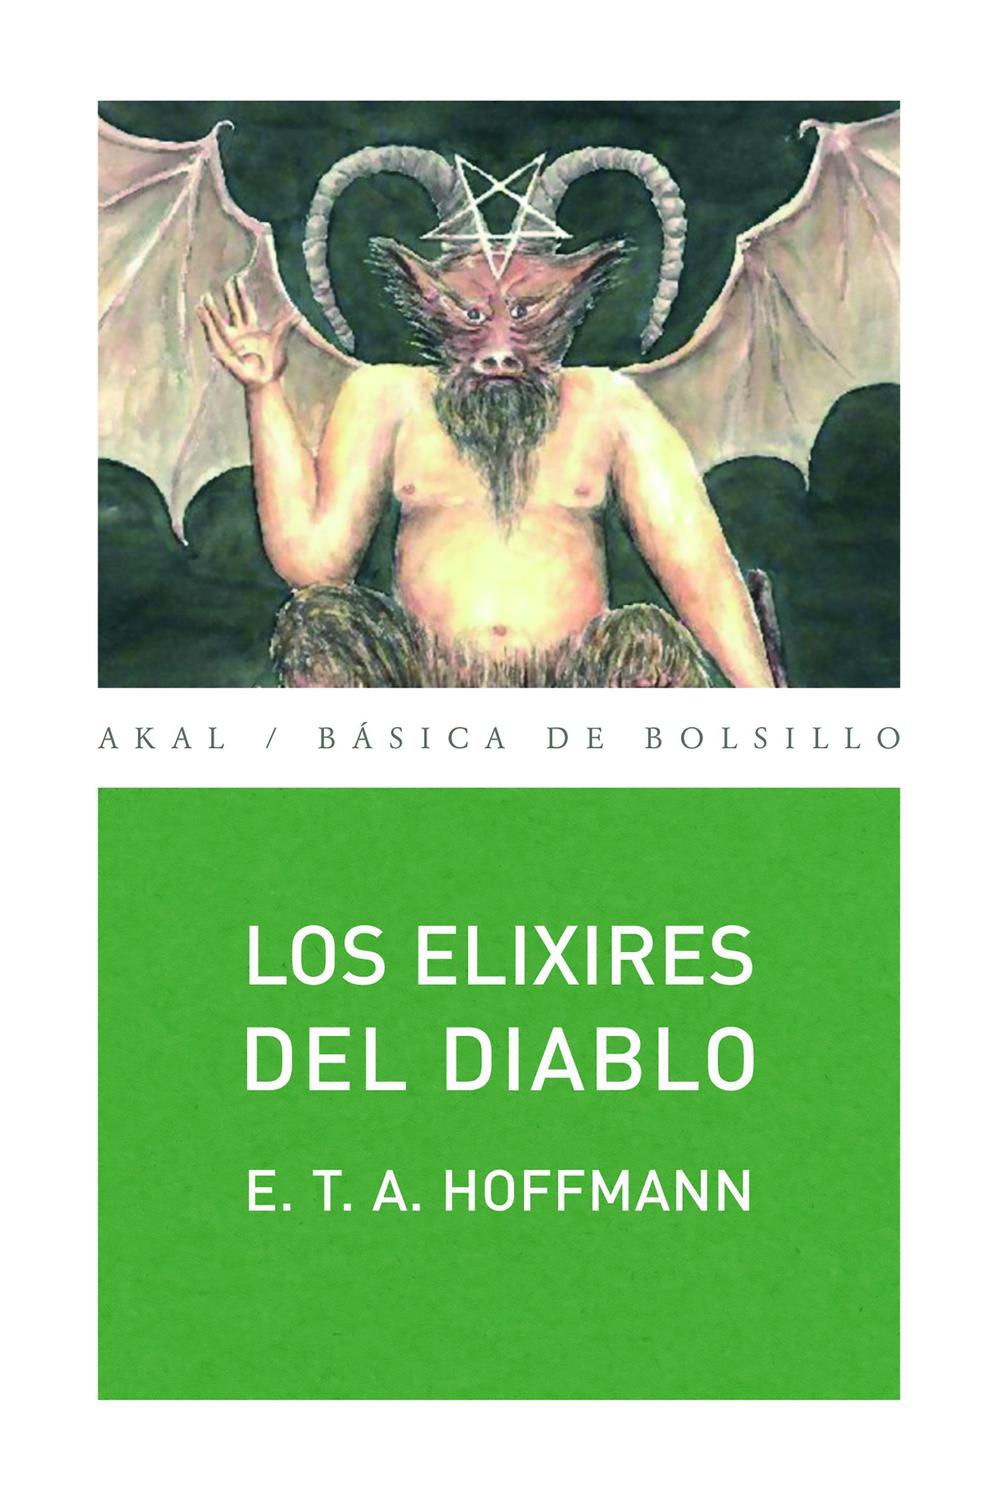 Los elixires del diablo - E. T. A. Hoffmann, Emilio José González García